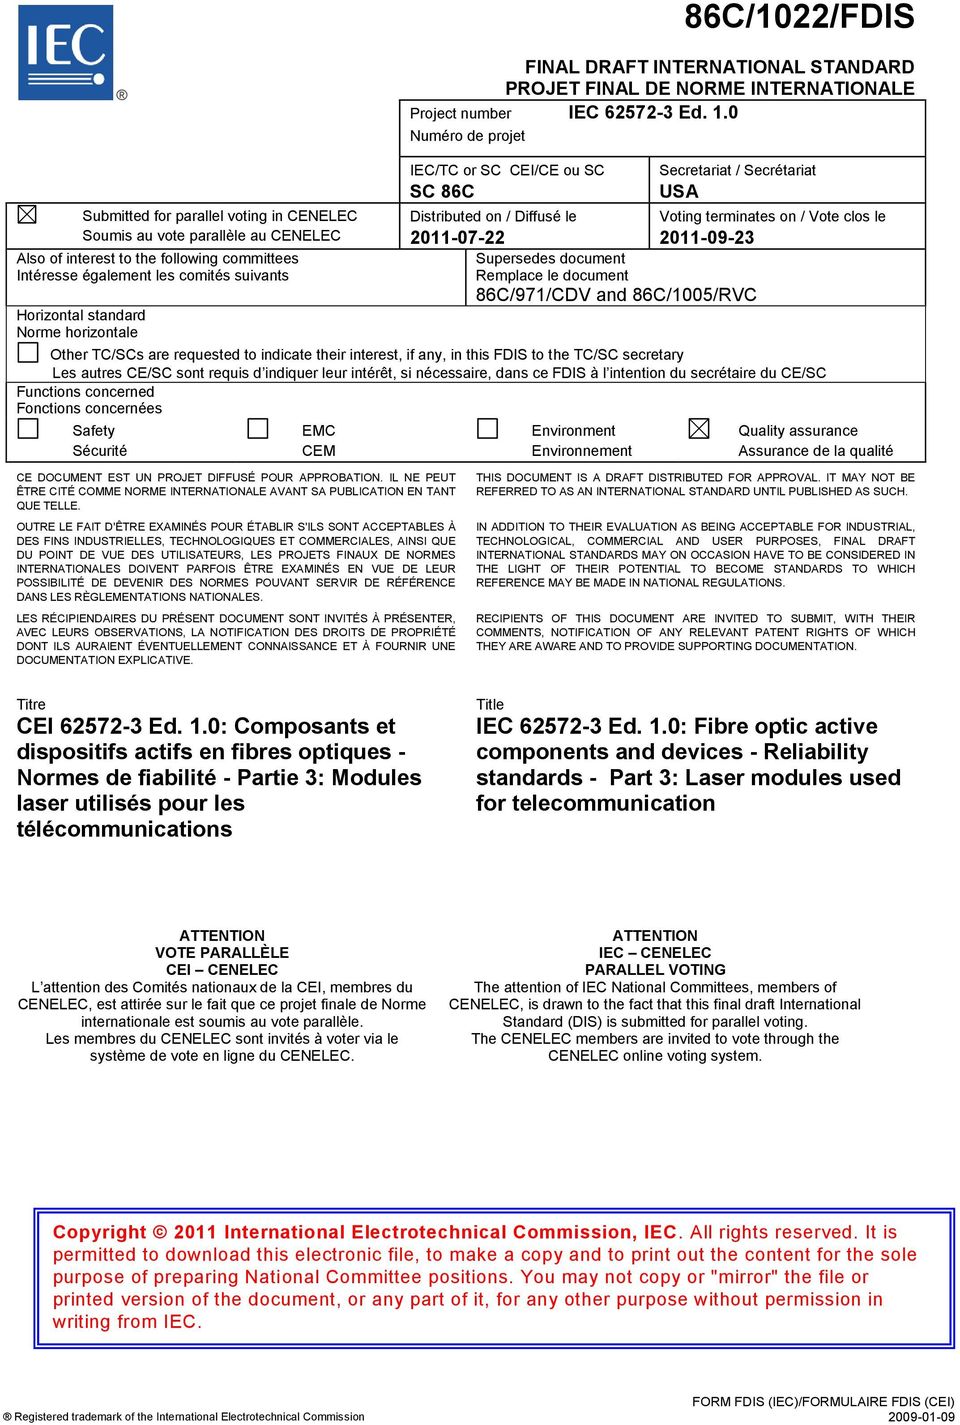 standard Norme horizontale IEC/TC or SC CEI/CE ou SC SC 86C Distributed on / Diffusé le 2011-07-22 Secretariat / Secrétariat USA Supersedes document Remplace le document 86C/971/CDV and 86C/1005/RVC